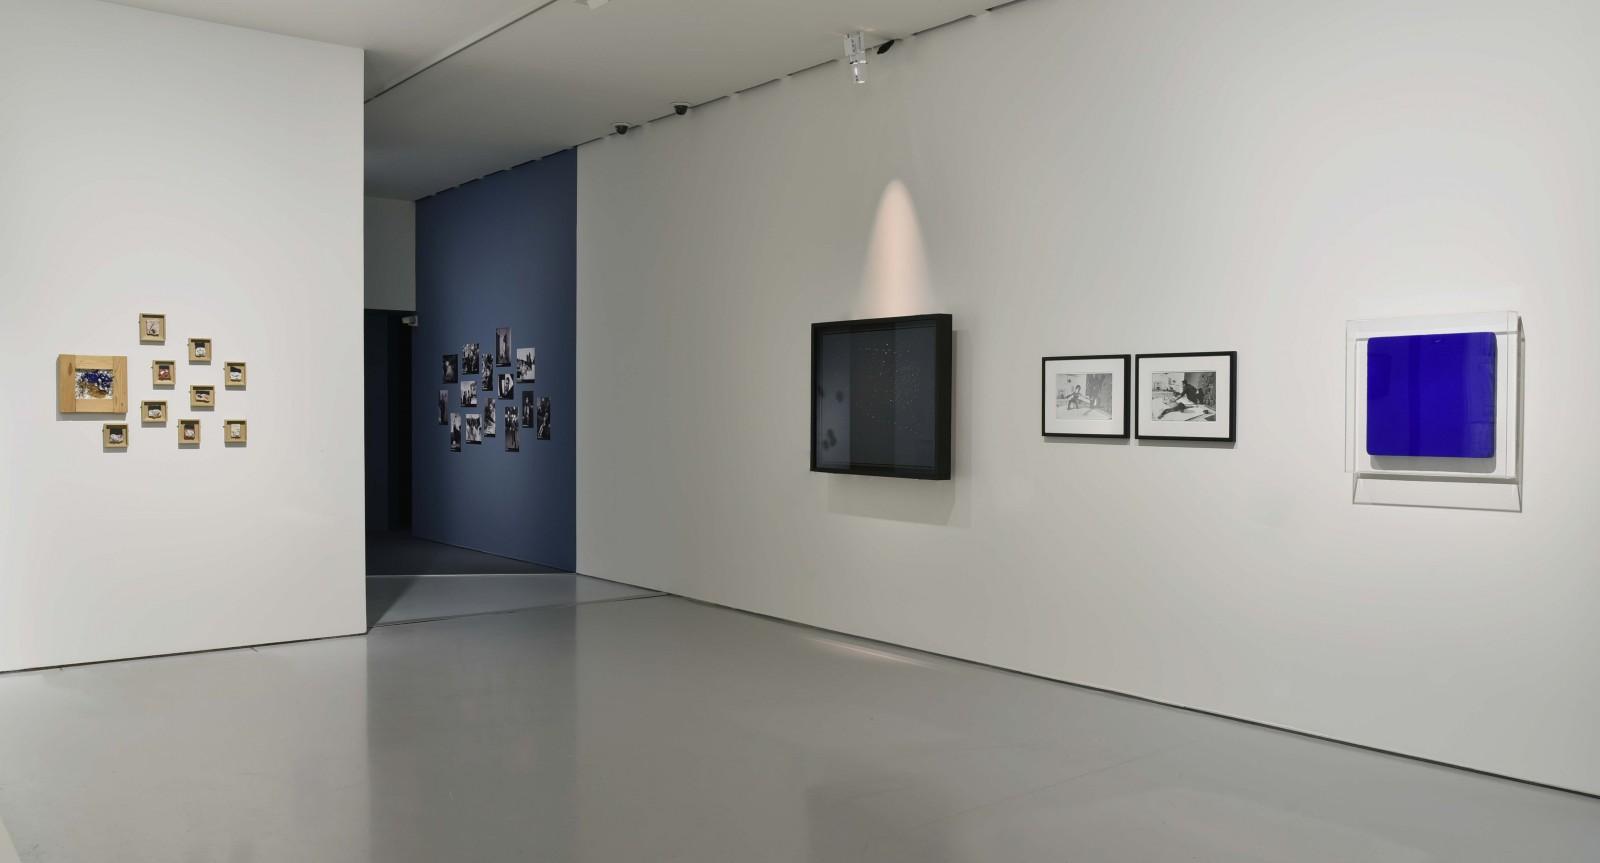 Vue de l'exposition "Archéologie du présent", Musée d'art moderne et contemporain, 2016 (IKB SN 24)